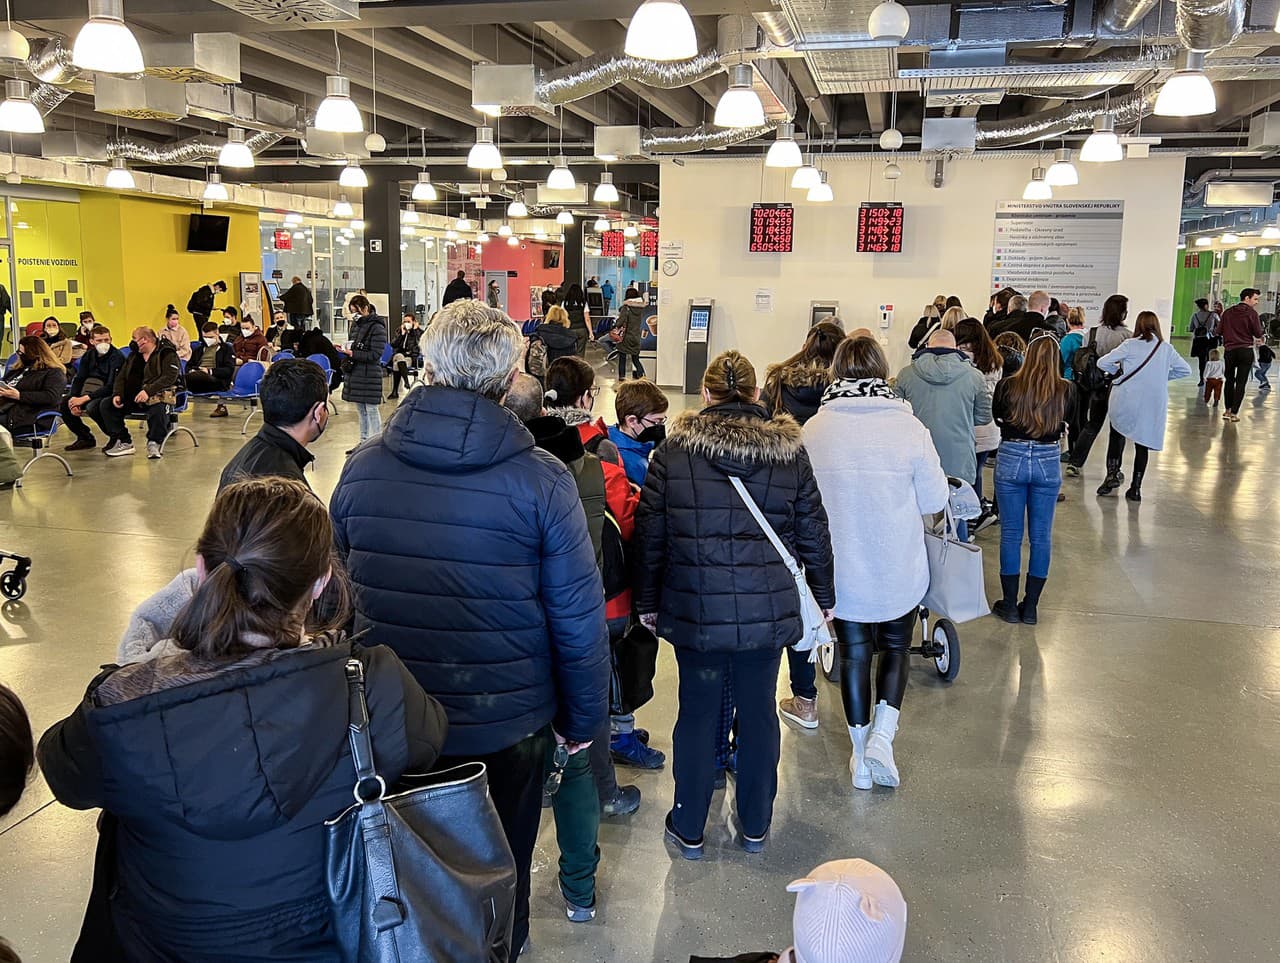 Ľudia čakajú v rade na vybavenie cestovného pasu v Klientskom centre v Bratislave